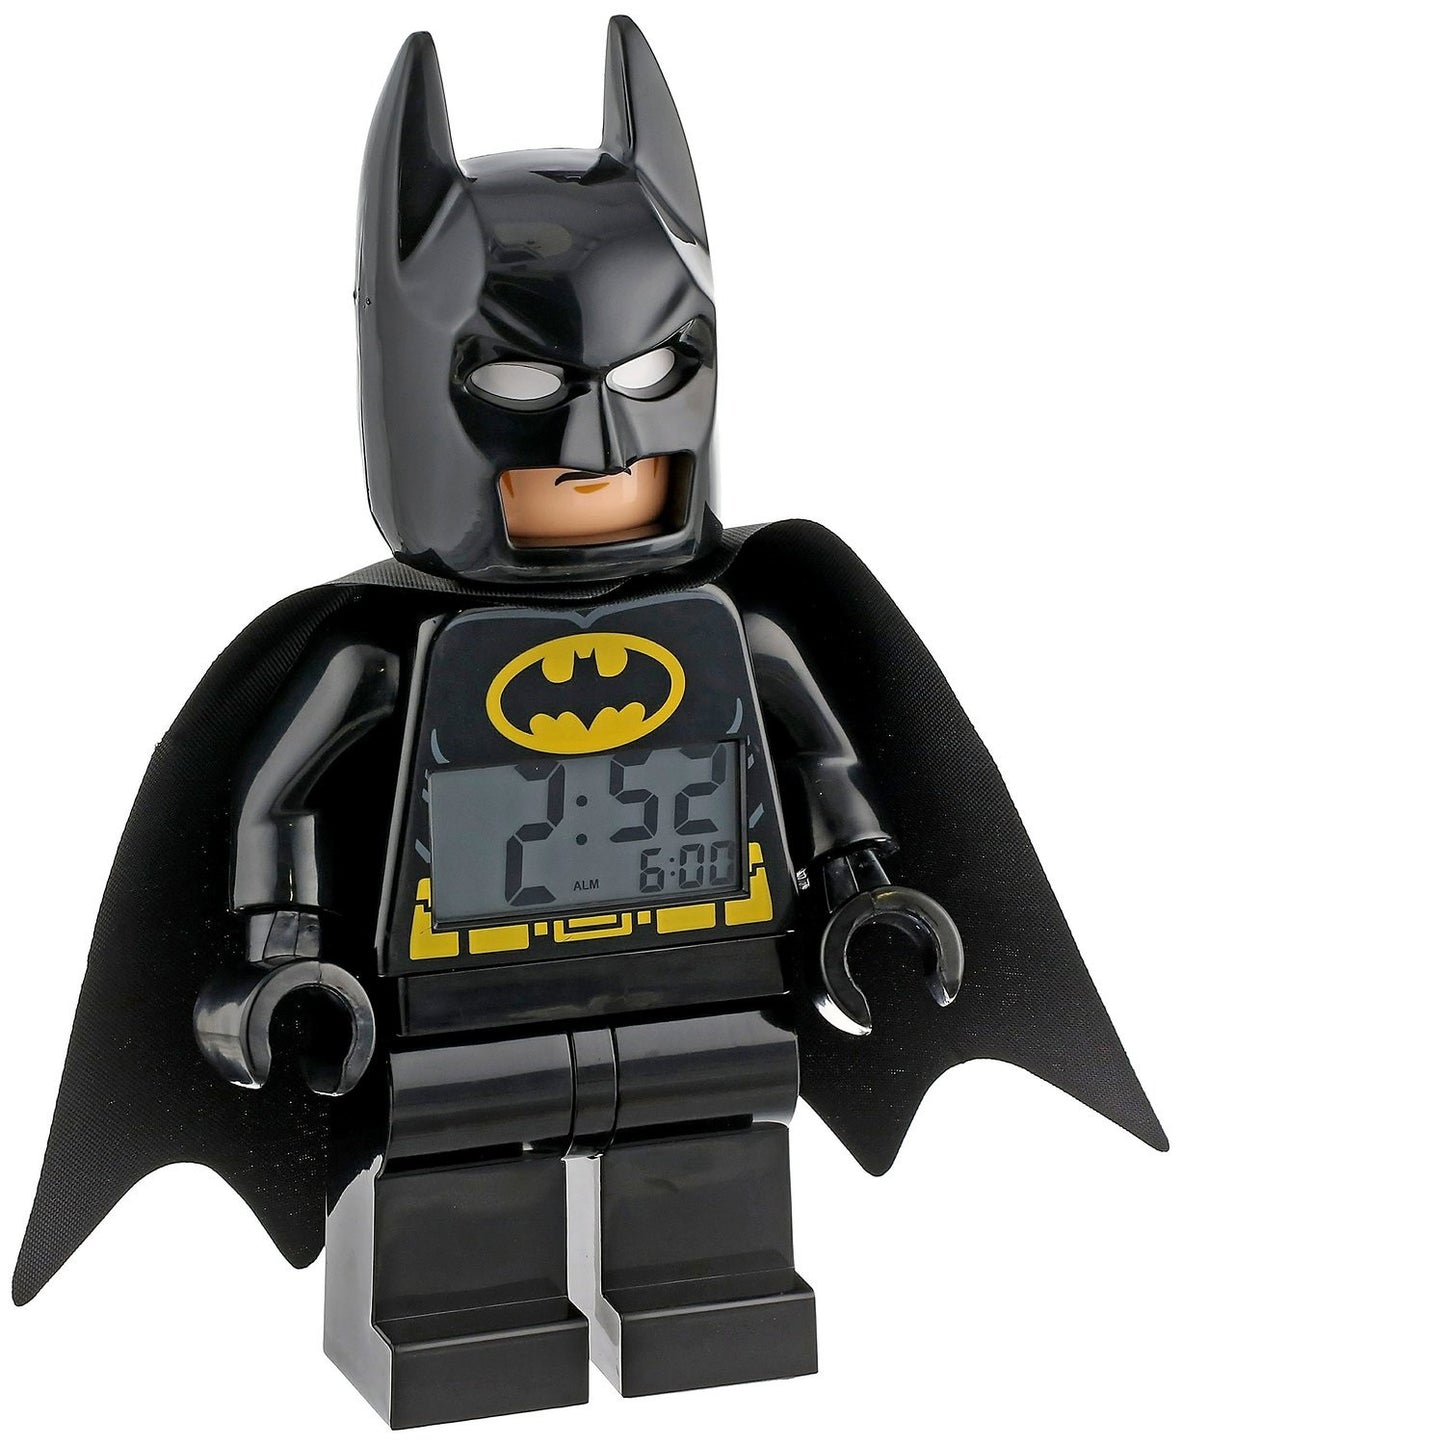 LEGO Batman Alarm Clock - OddGifts.com